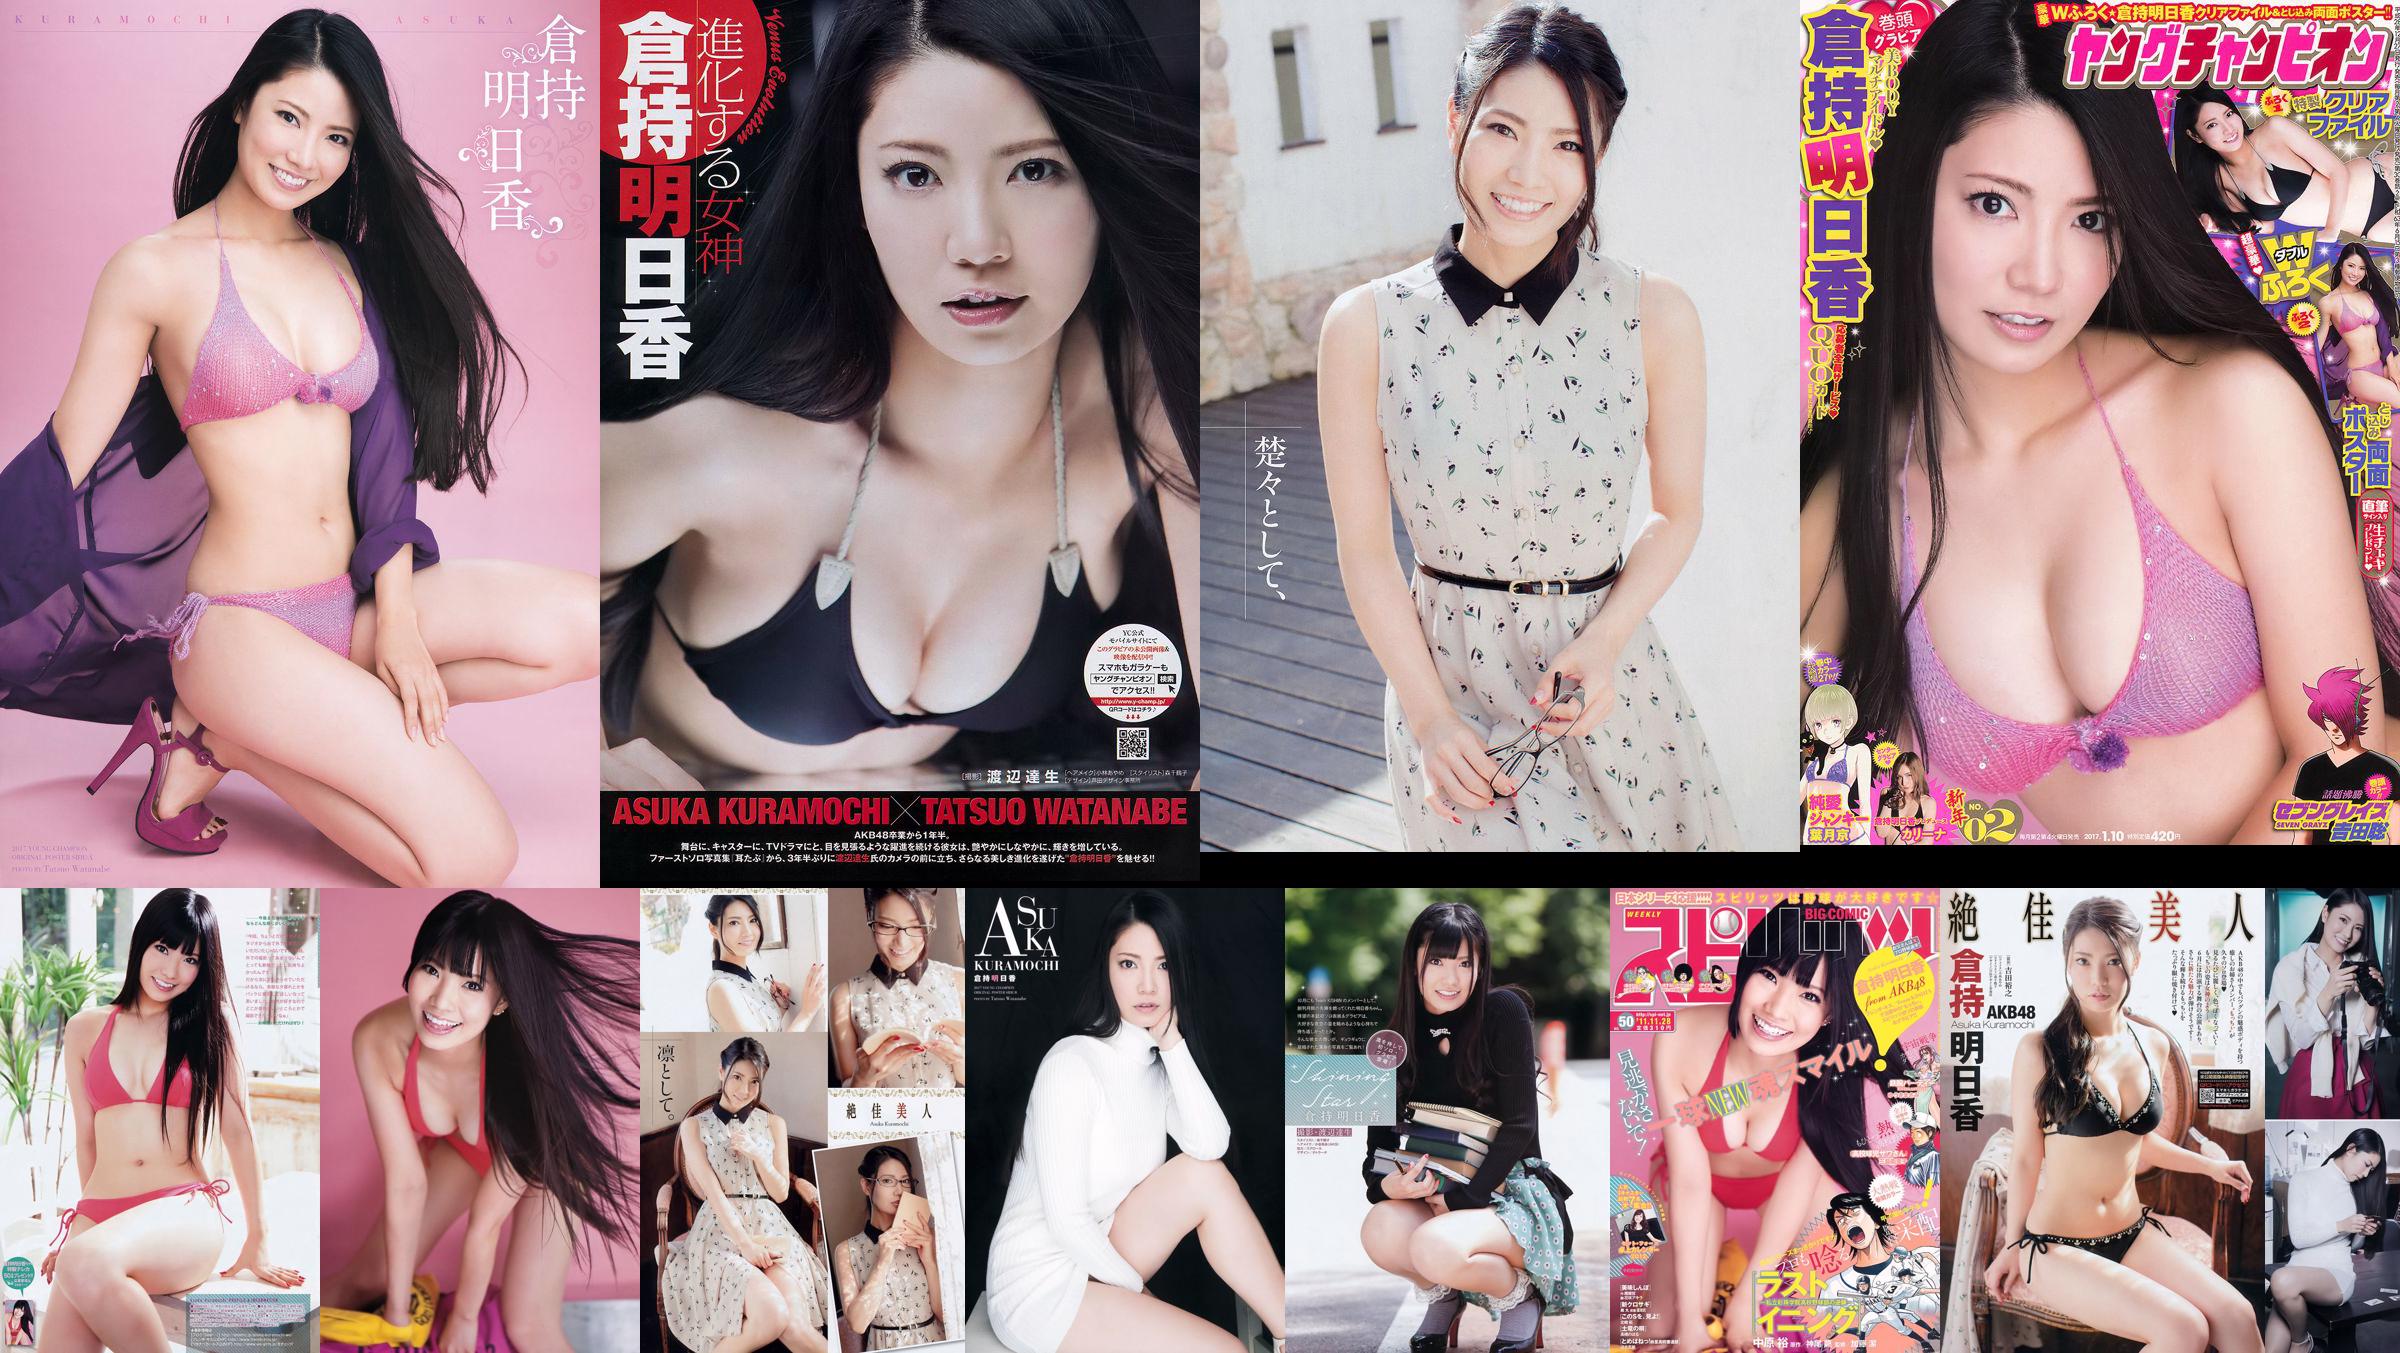 [Young Champion] Asuka Kuramochi 2015 No.09 Photo Magazine No.707dc6 Page 1